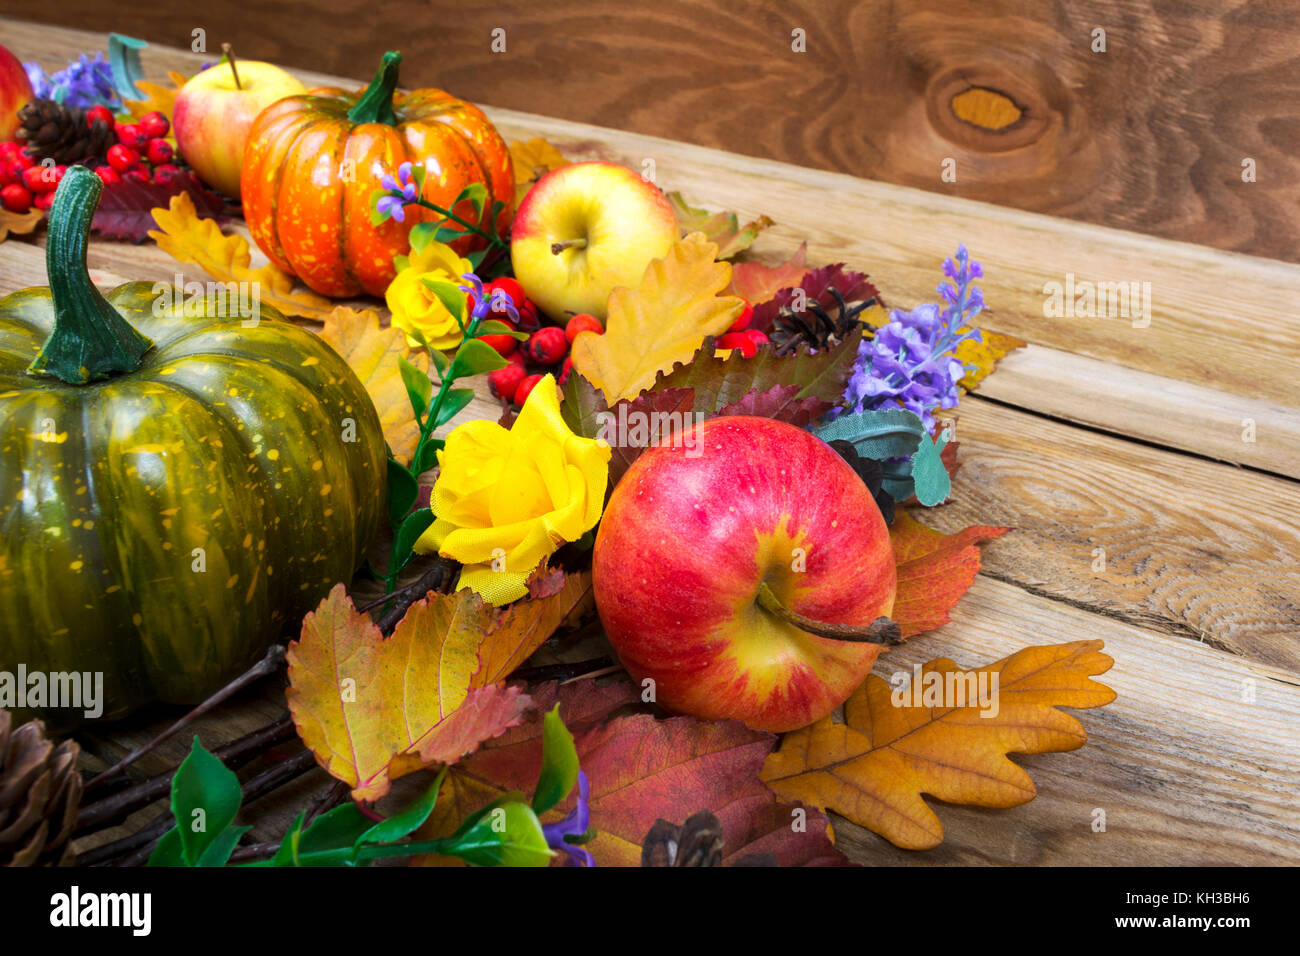 Décor de l'action de grâce avec le rouge, le jaune feuilles d'automne, citrouilles, pommes, fleurs lilas et Rowan berries sur la vieille table en bois, copy space Banque D'Images